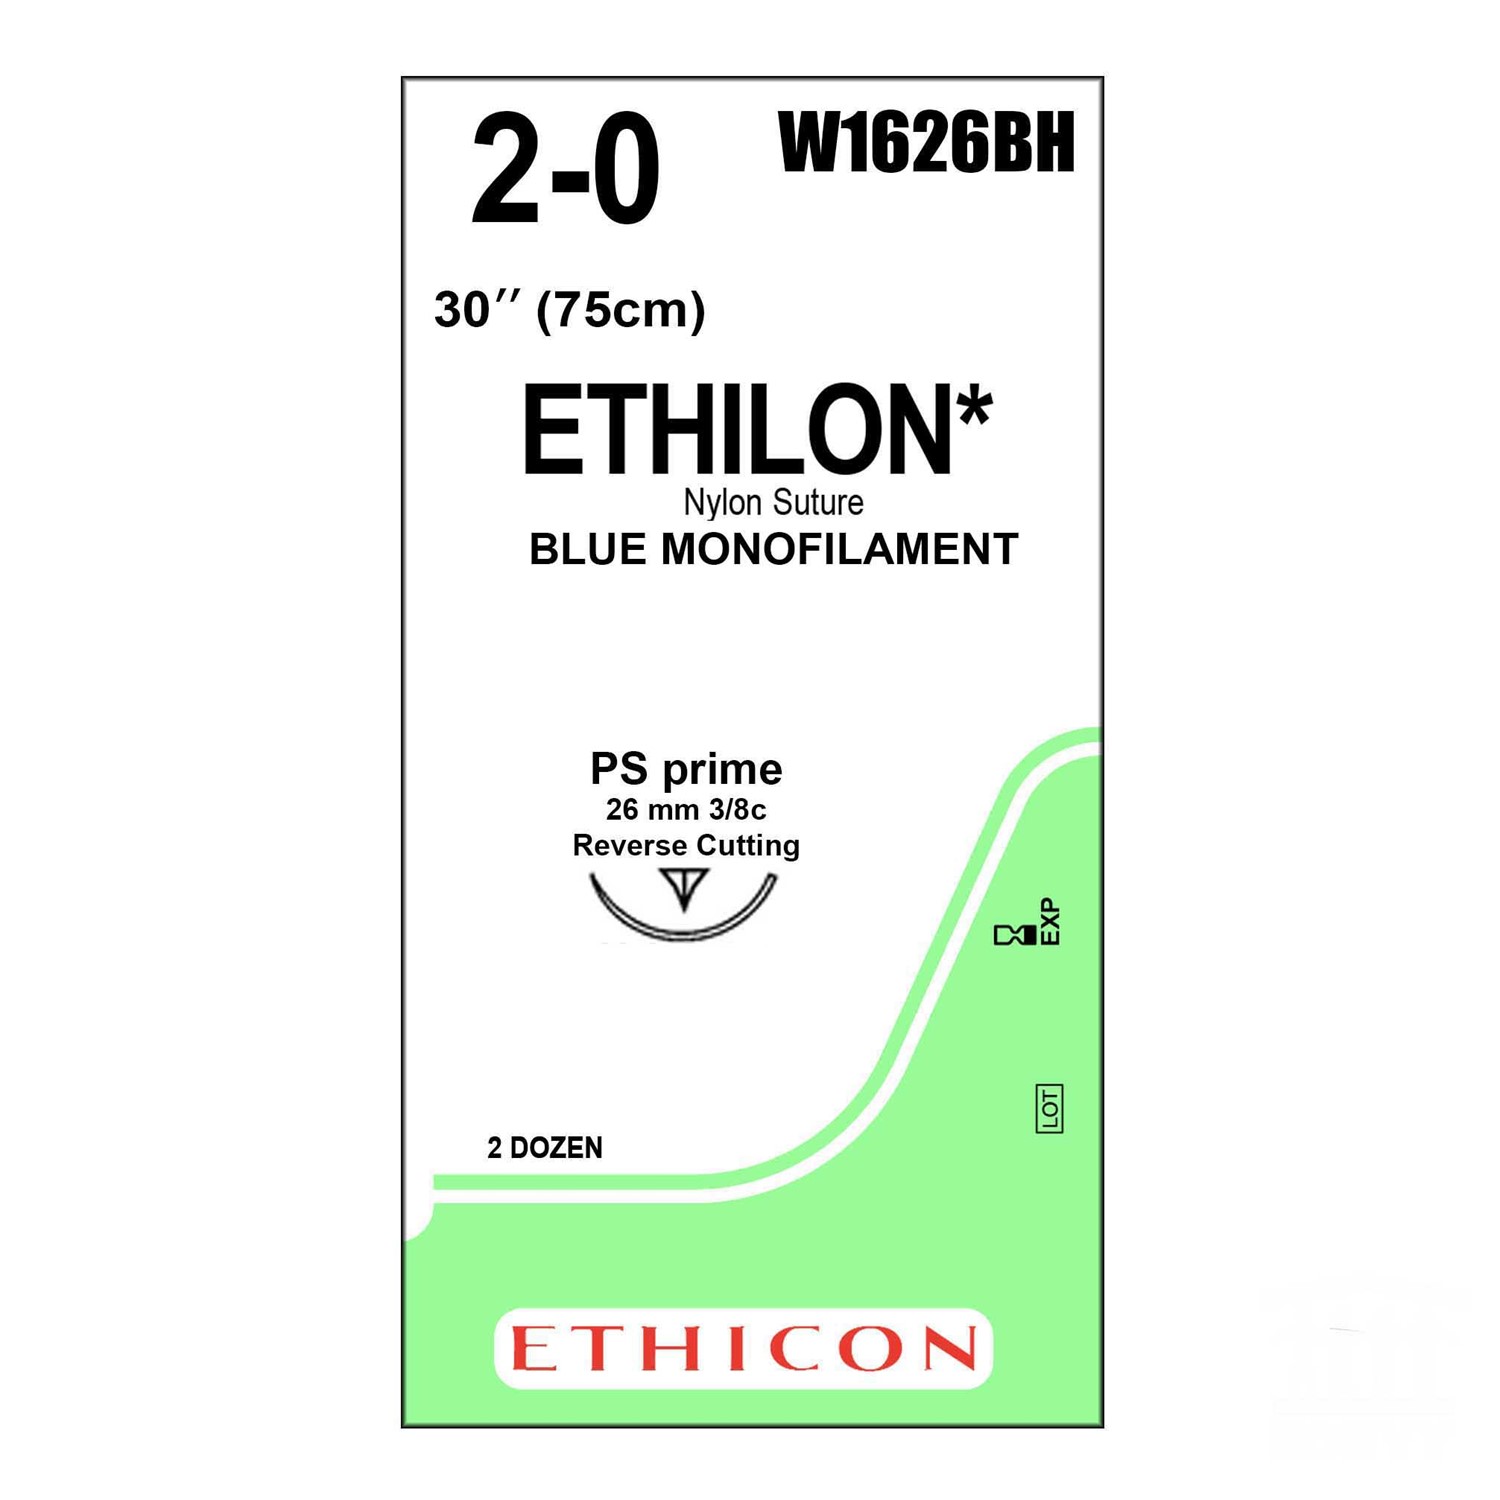 Ράμμα ETHILON No 2/0 με βελόνα 26mm Αντιστρόφως Κόπτουσα Πλαστικής P 3/8c, μήκος ράμματος 75cm